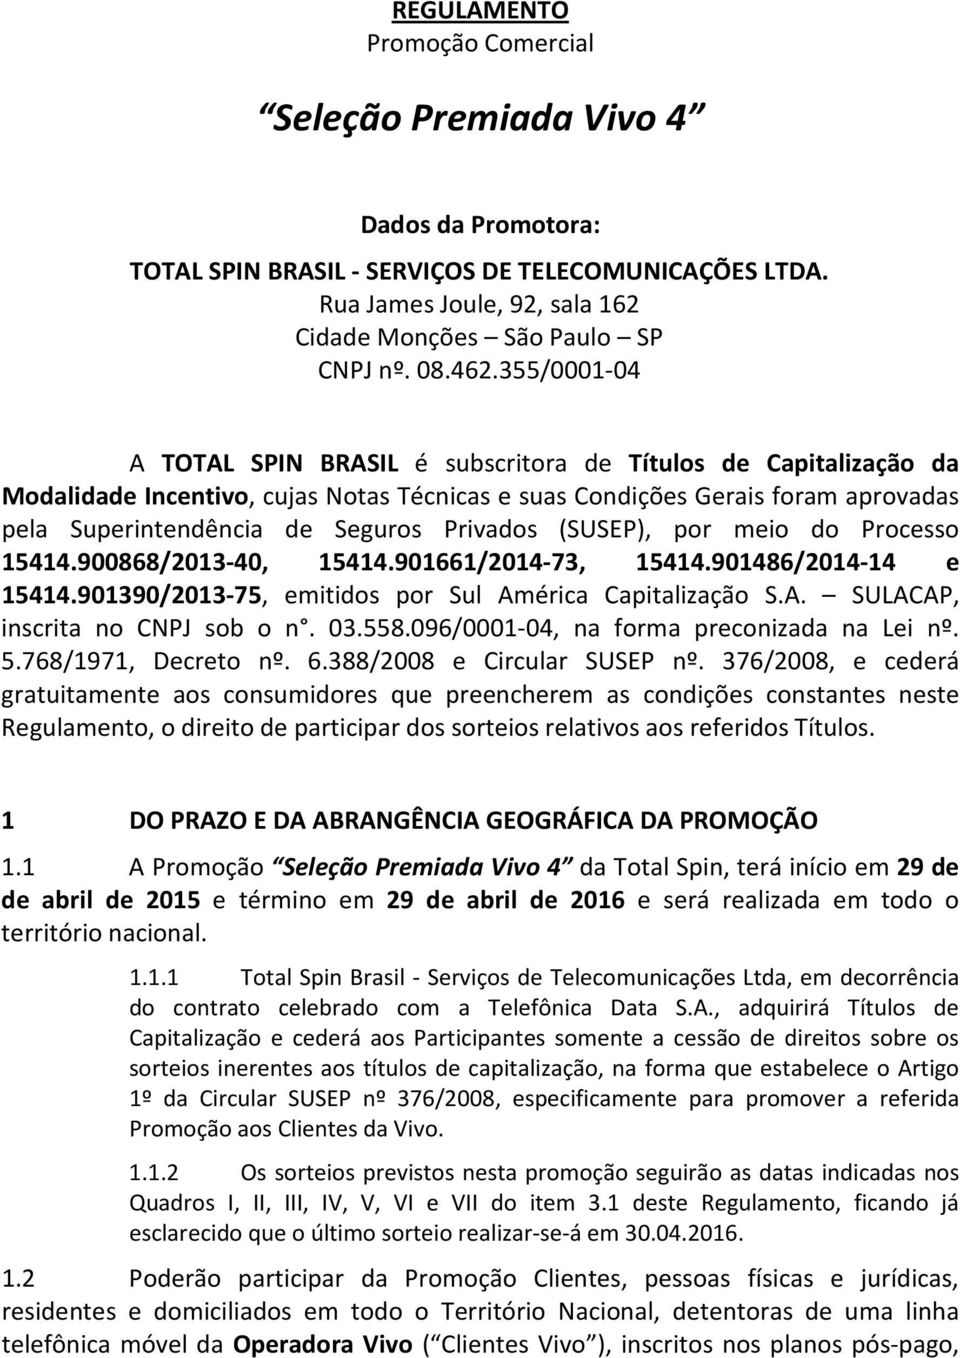 Privados (SUSEP), por meio do Processo 15414.900868/2013-40, 15414.901661/2014-73, 15414.901486/2014-14 e 15414.901390/2013-75, emitidos por Sul América Capitalização S.A. SULACAP, inscrita no CNPJ sob o n.